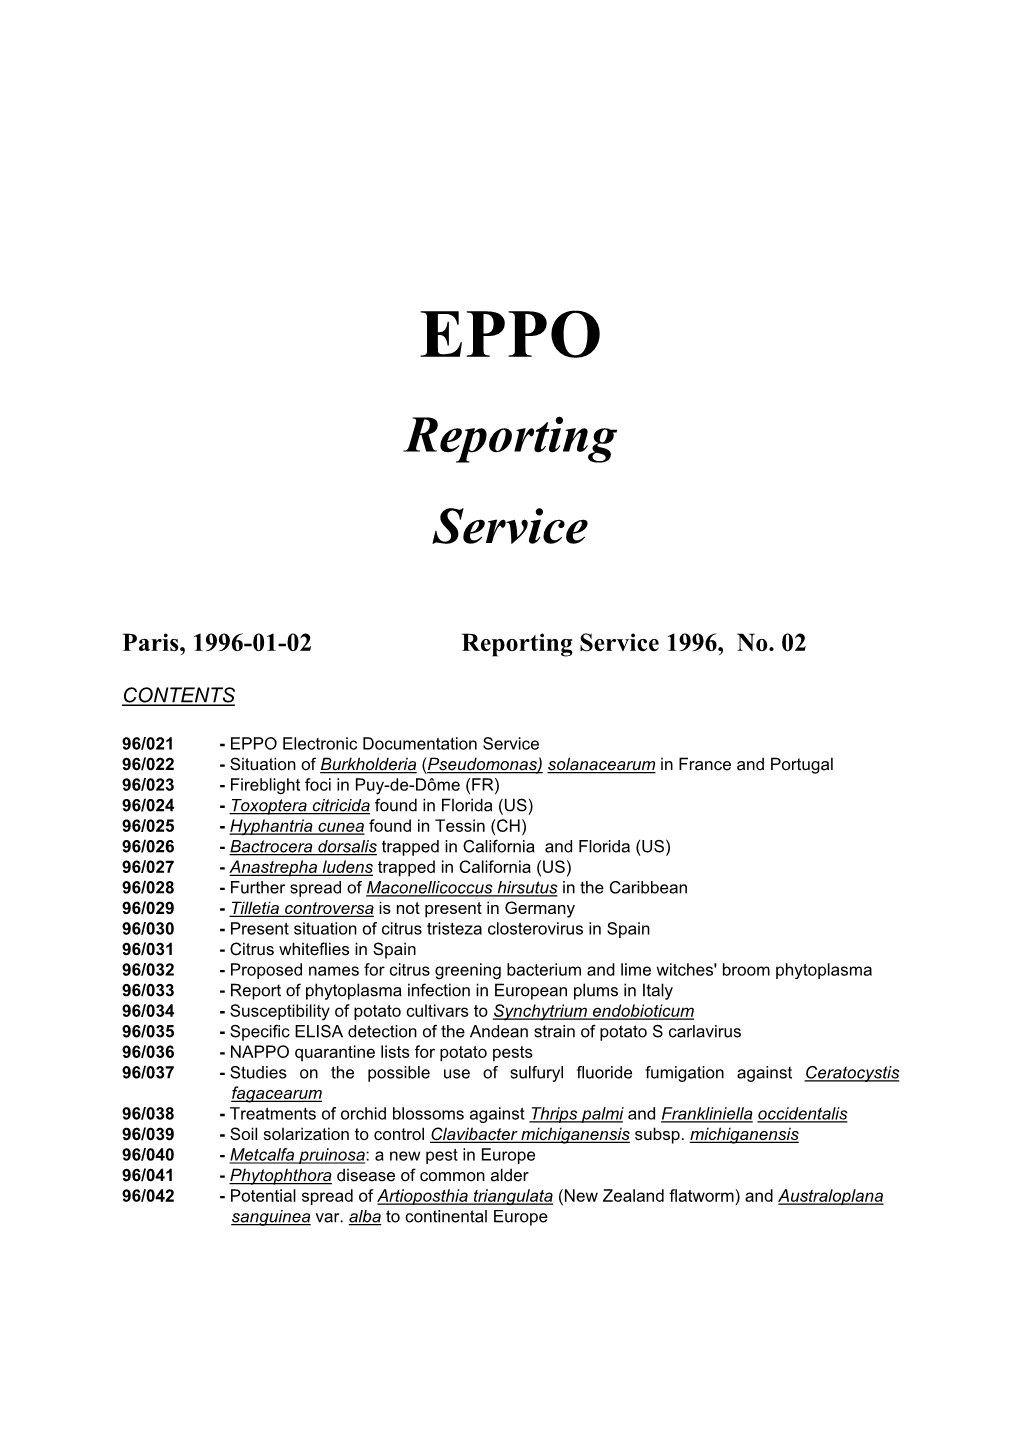 EPPO Reporting Service, 1996, No. 2